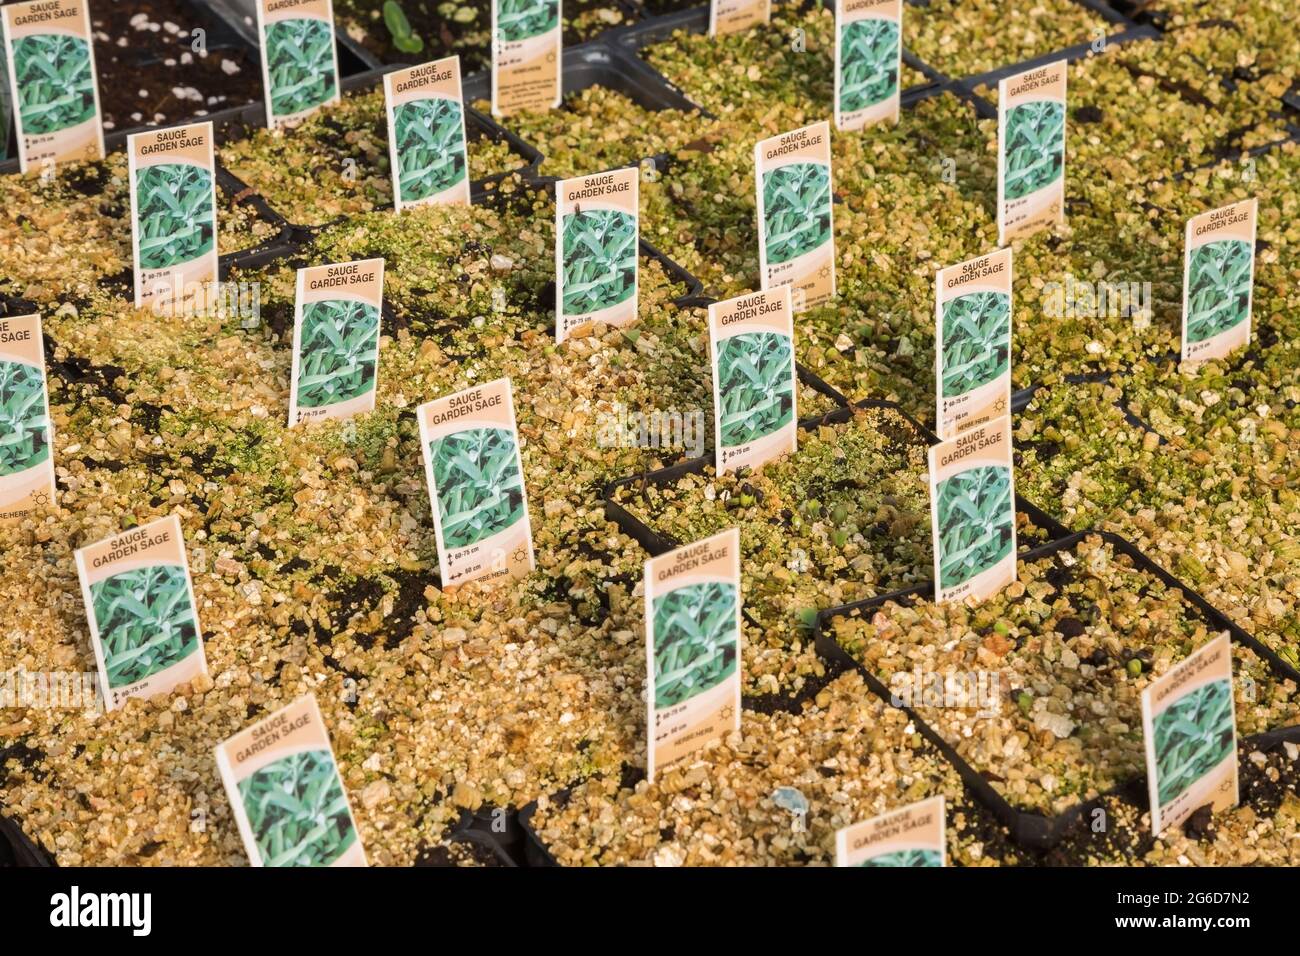 Salvia - étiquettes de plantes de sauge de jardin dans des récipients recouverts d'une couche de vermiculite à l'intérieur d'une serre. Banque D'Images